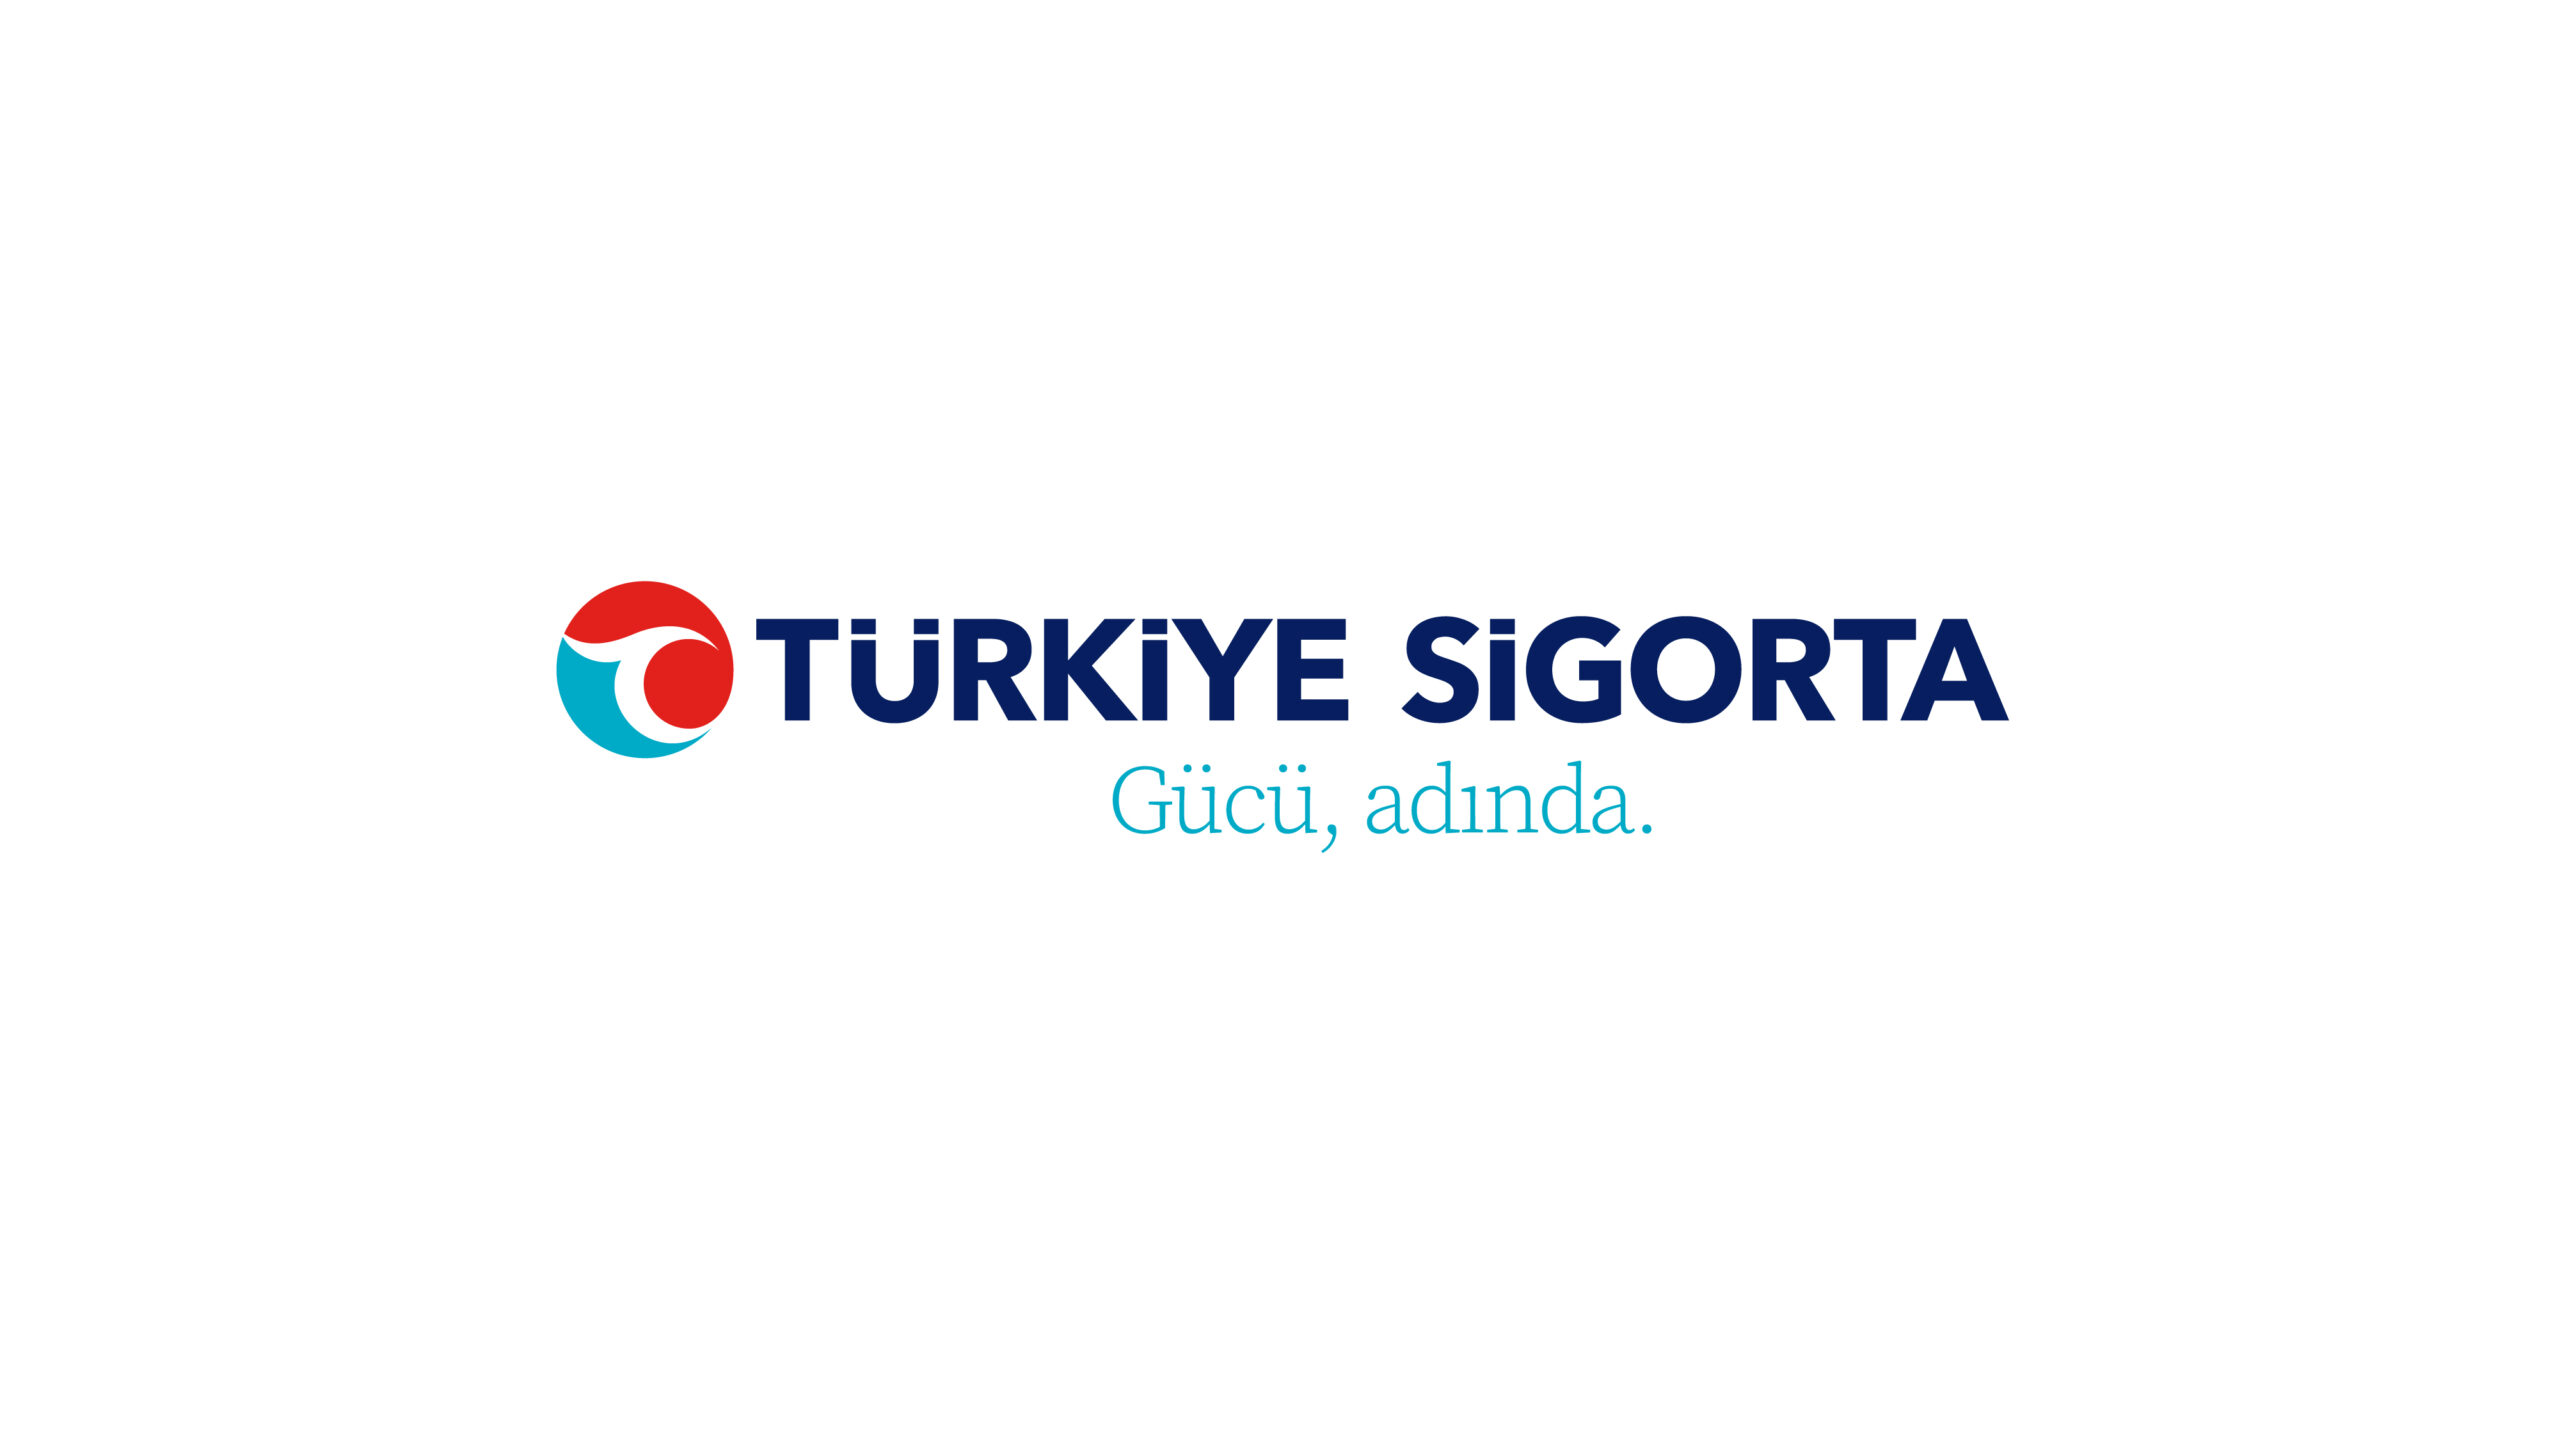 Türkiye Sigorta ve Türkiye Hayat Emeklilik yeni logosuyla da dikkat çekiyor